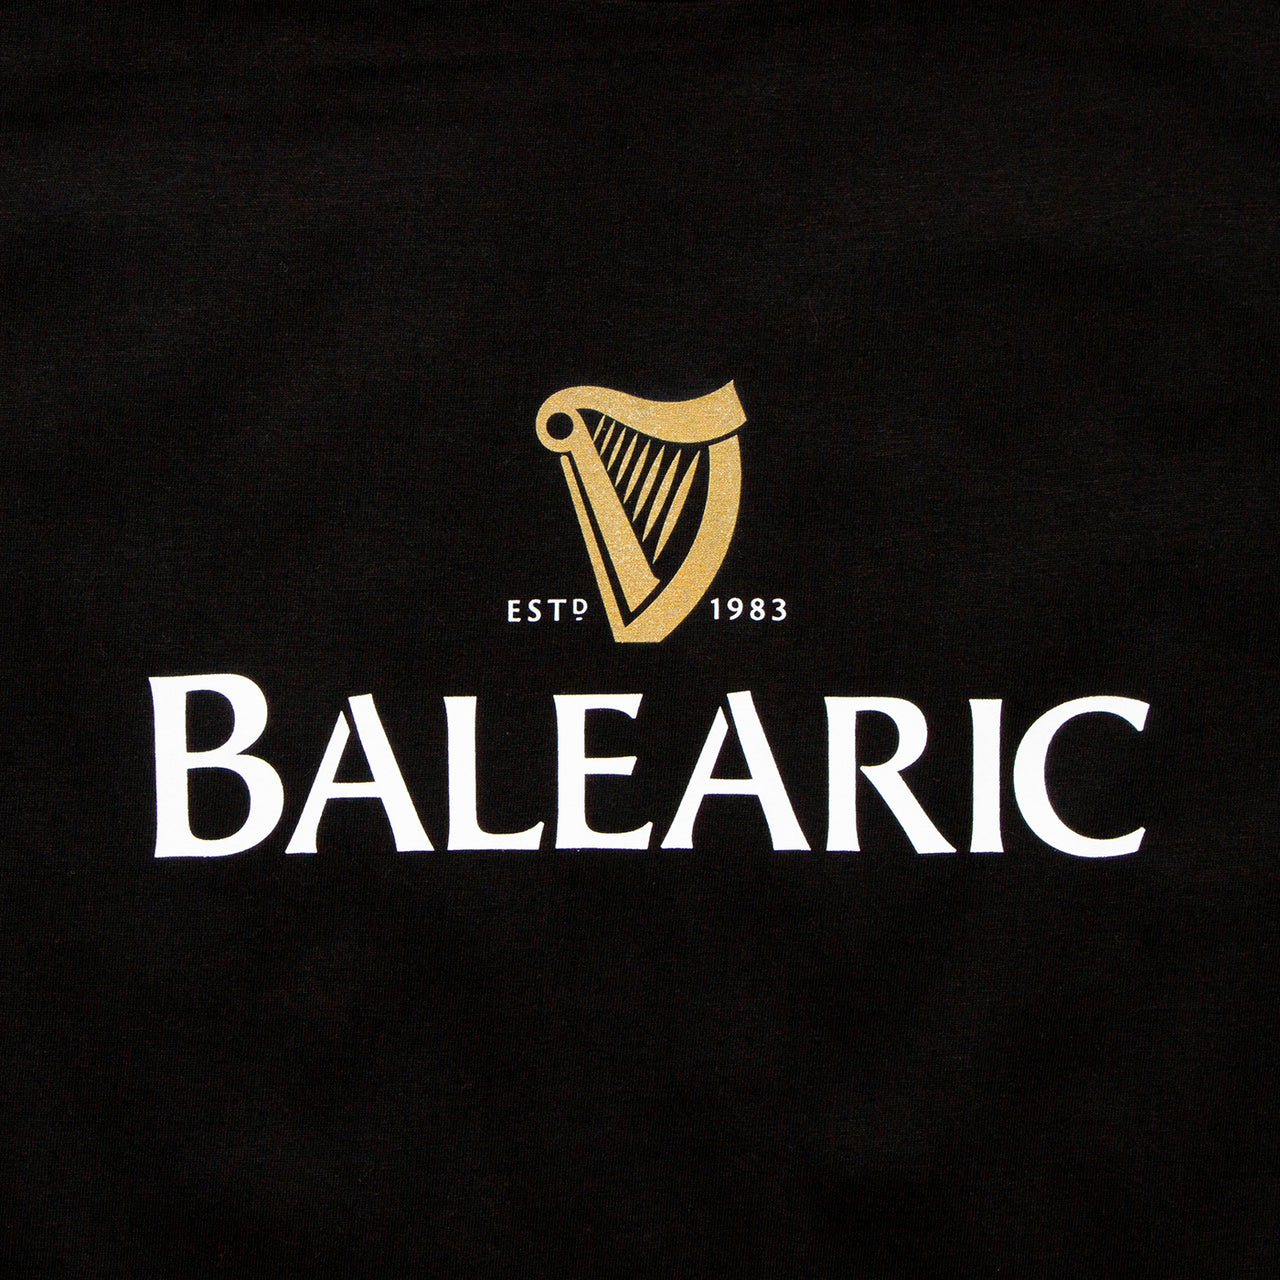 Balearic Harp - Tshirt - Black or Green